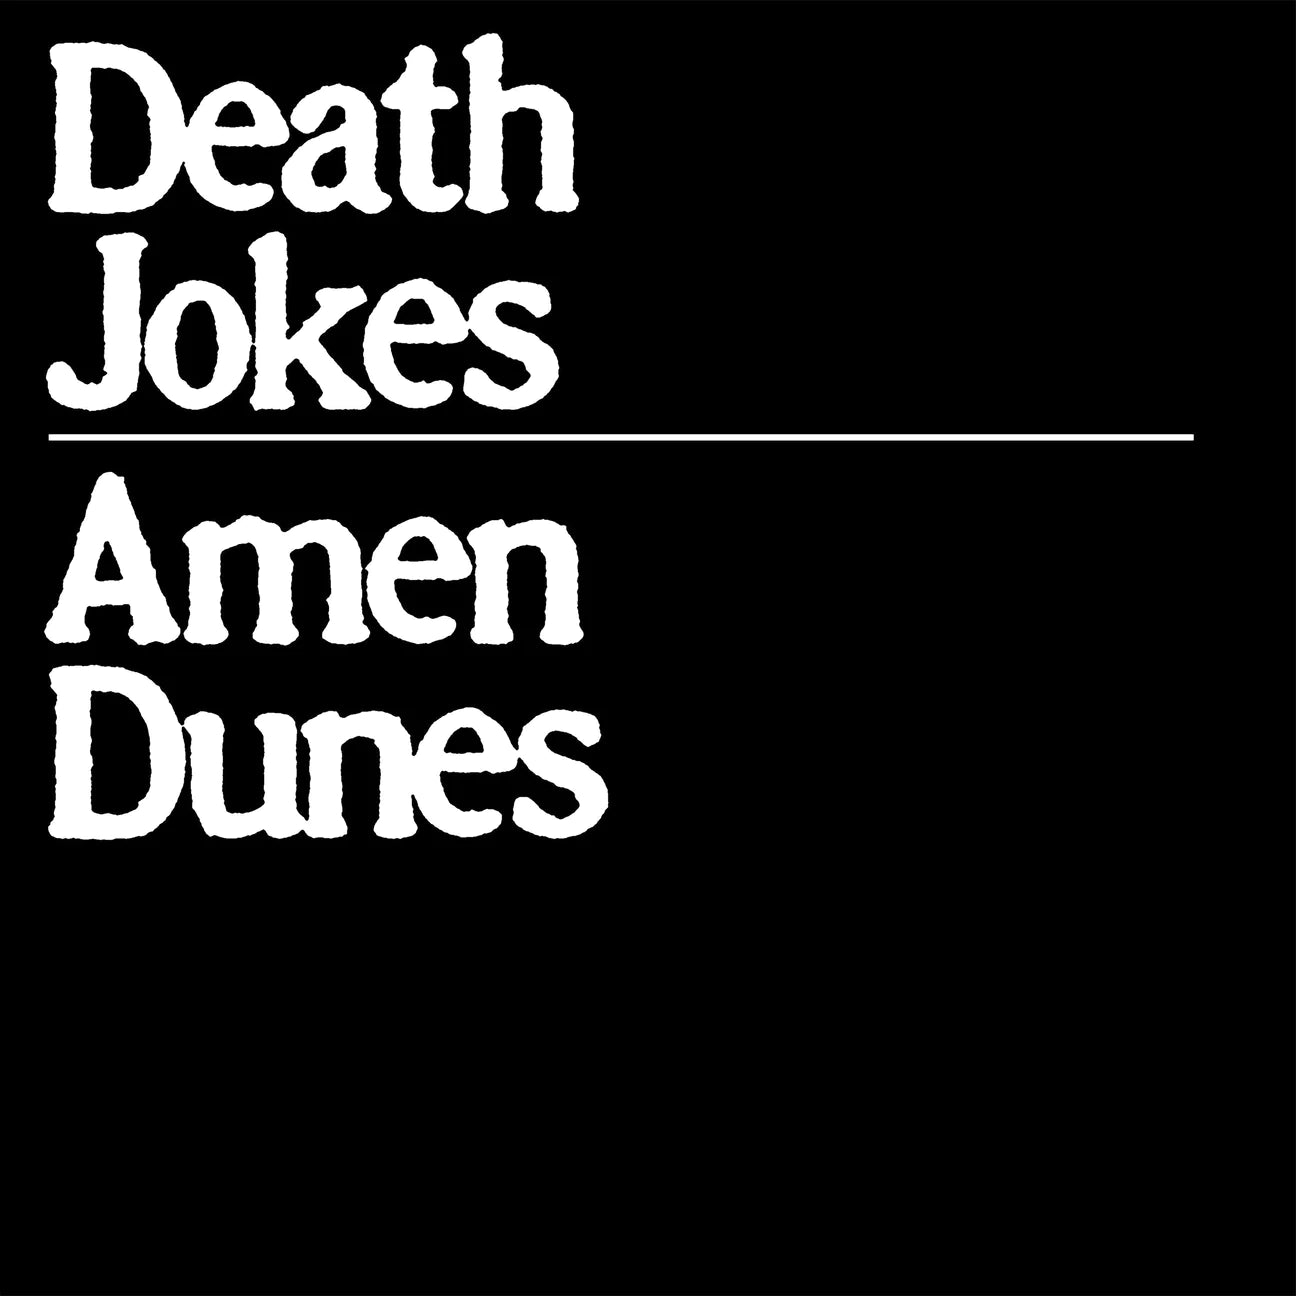 Amen Dunes - Death Jokes - Loser Edition Clear Color Vinyl